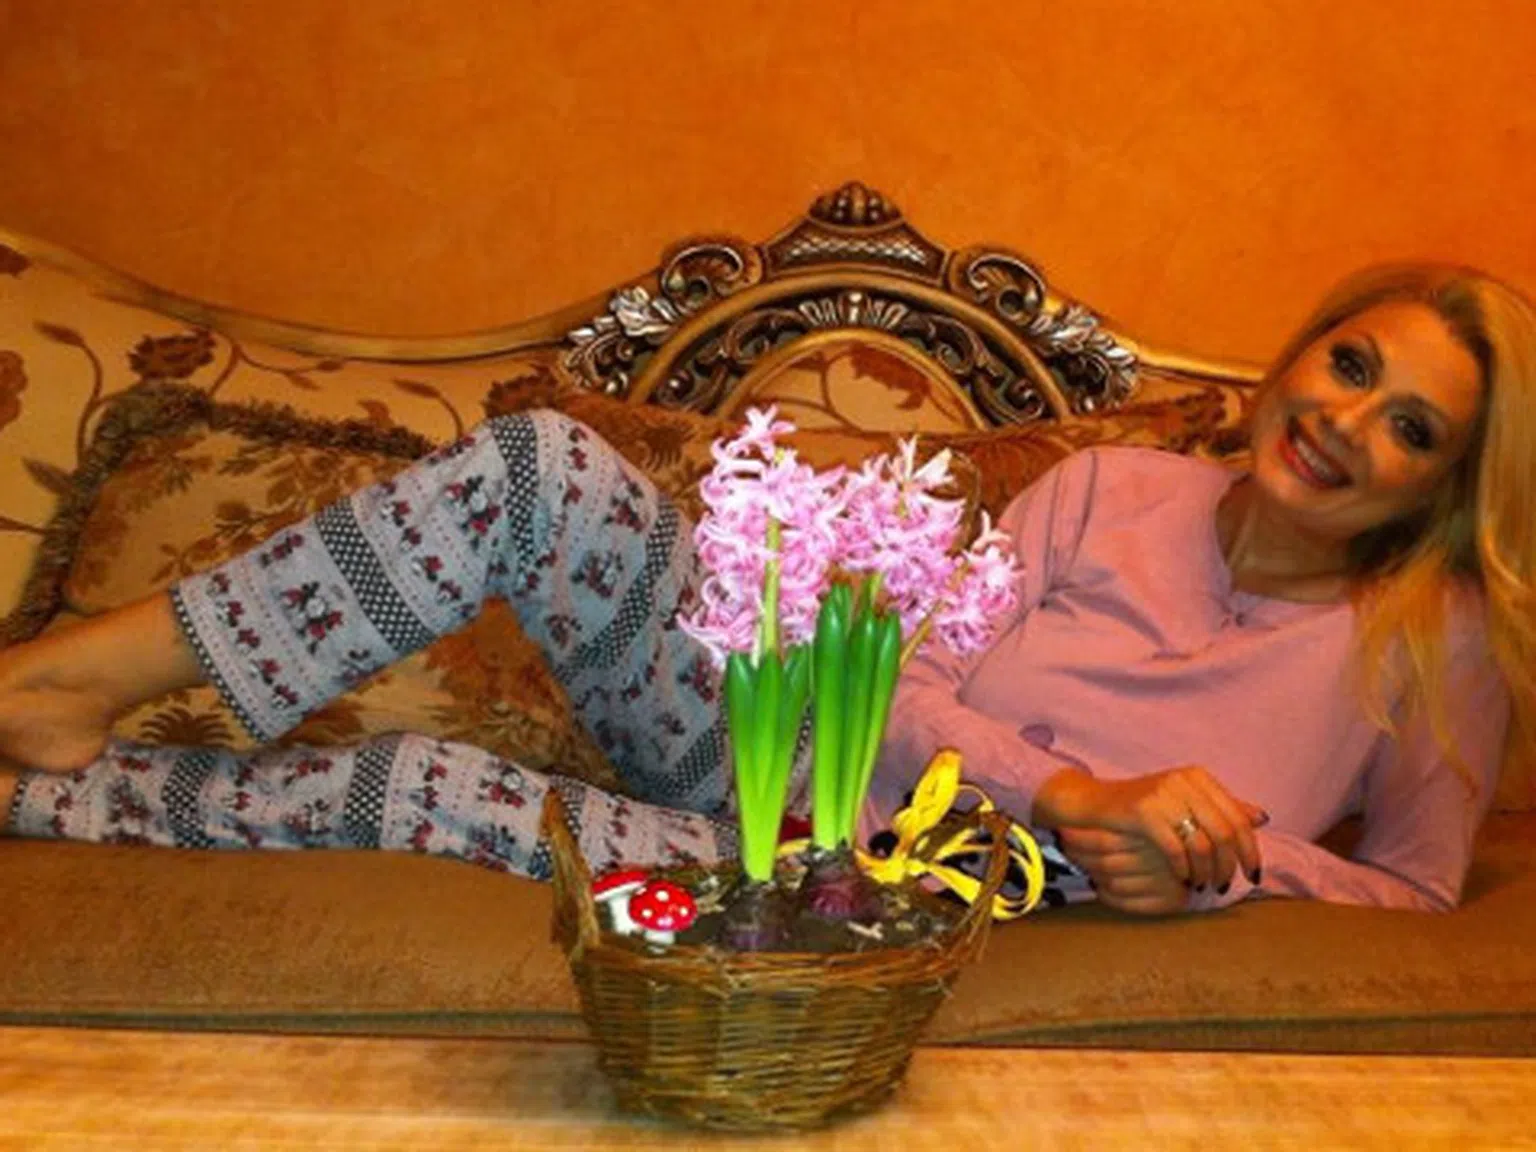 Венета Райкова се излага по пижама